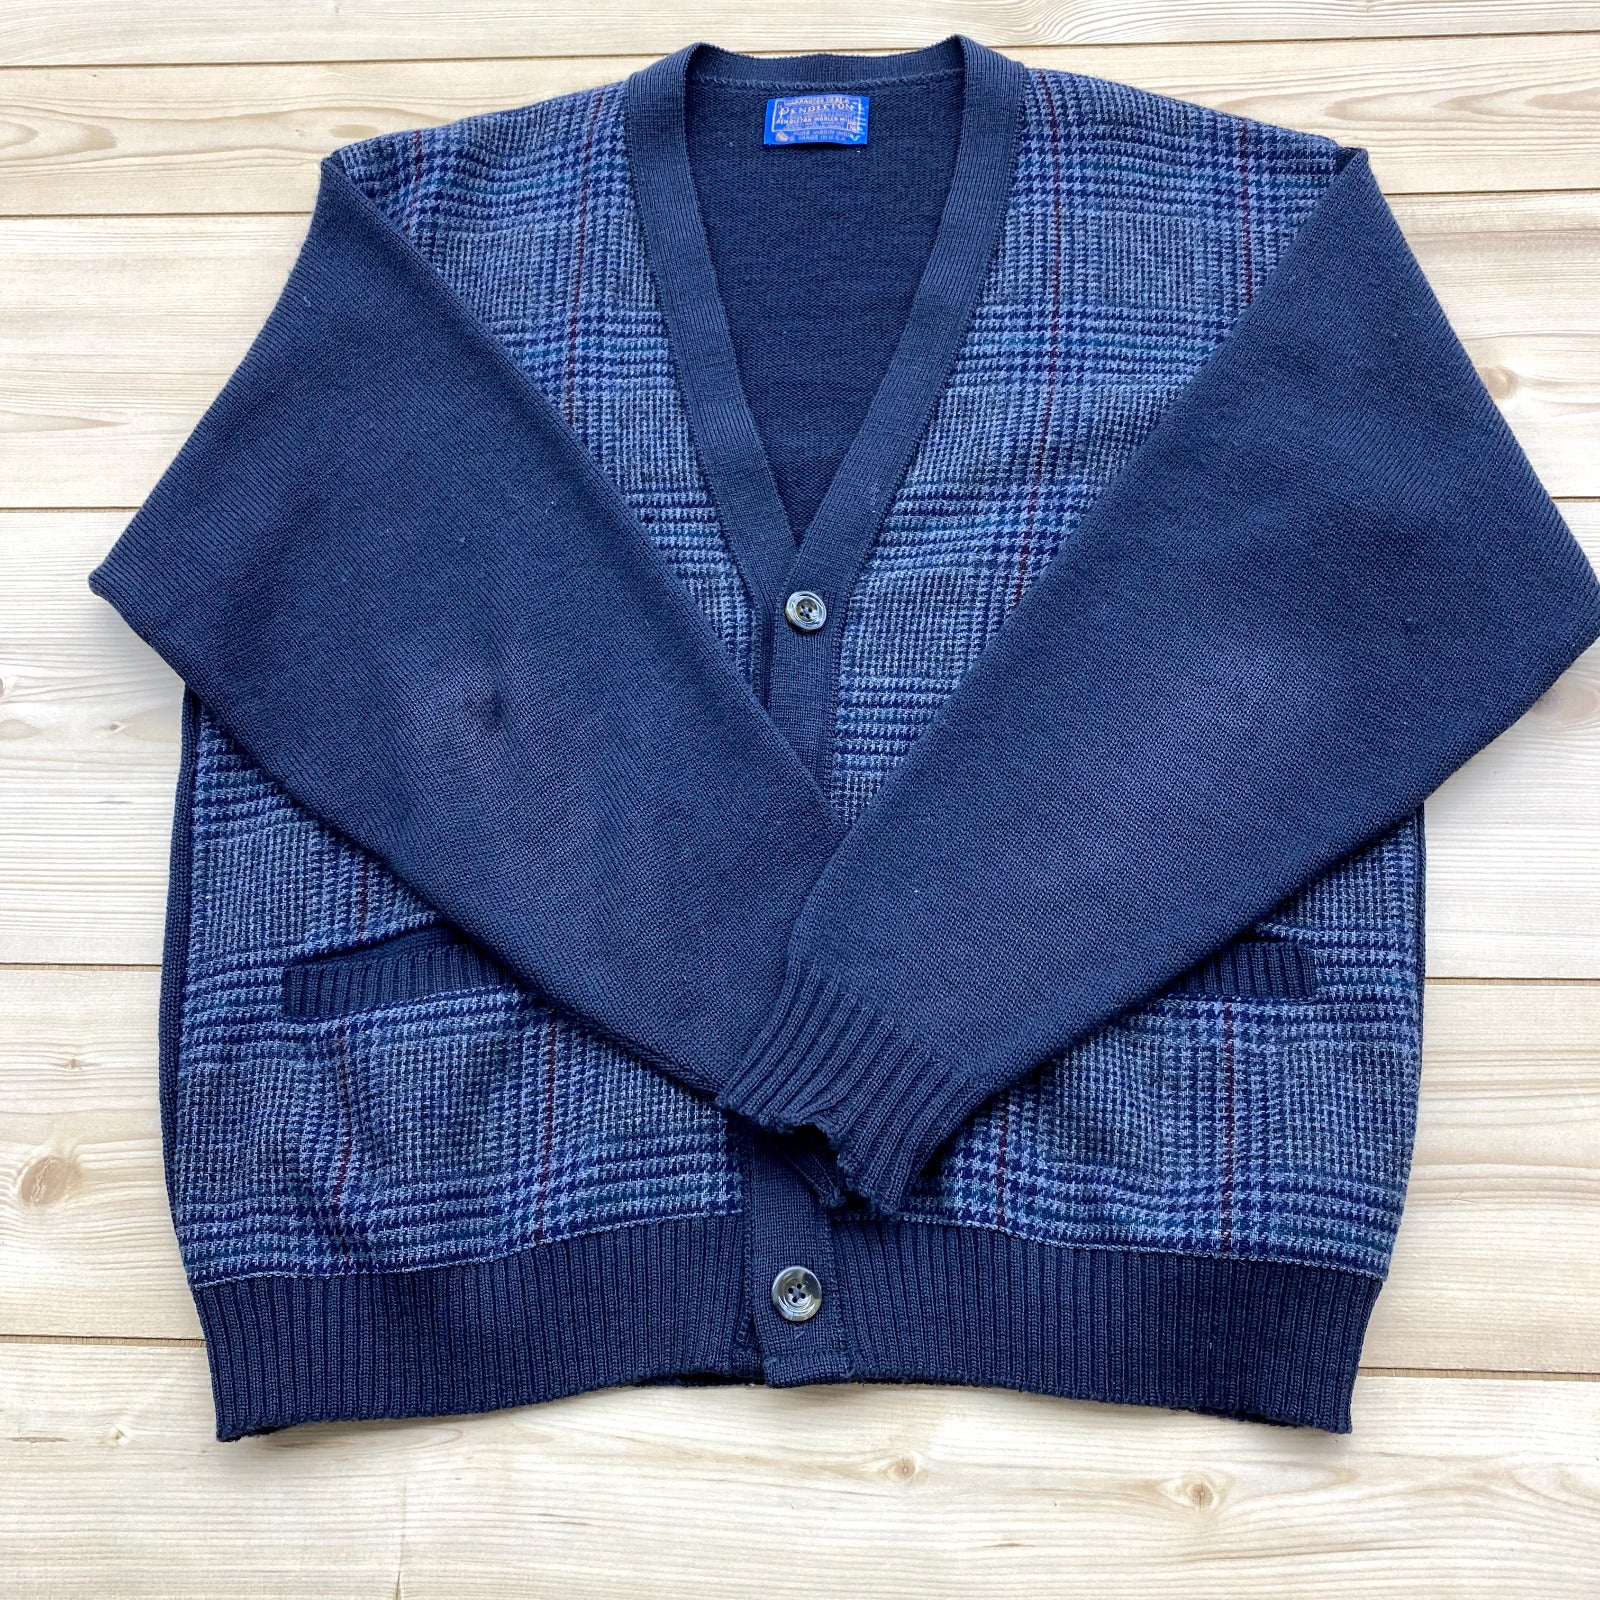 Vintage Pendleton Grey Plaid 100% Virgin Wool Cardigan Sweater Mens Size M